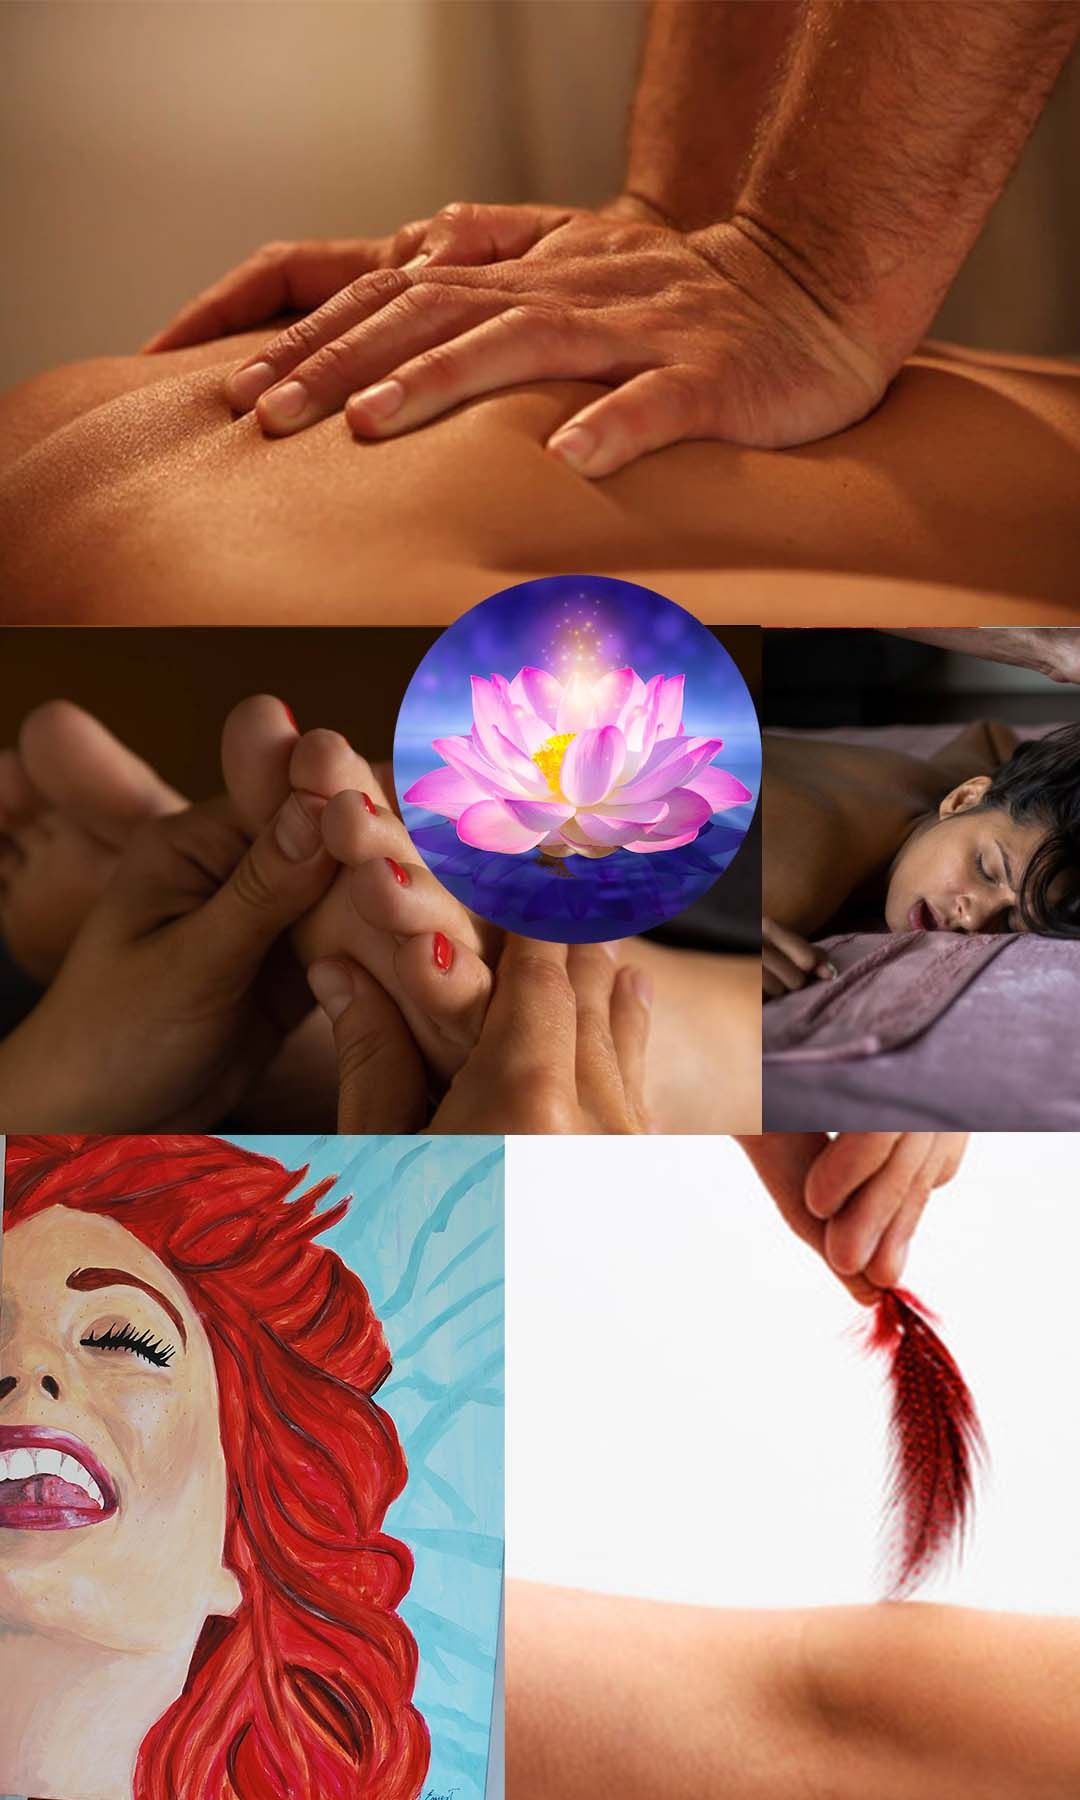 Тендітний РЕЛАКС масаж для жінок